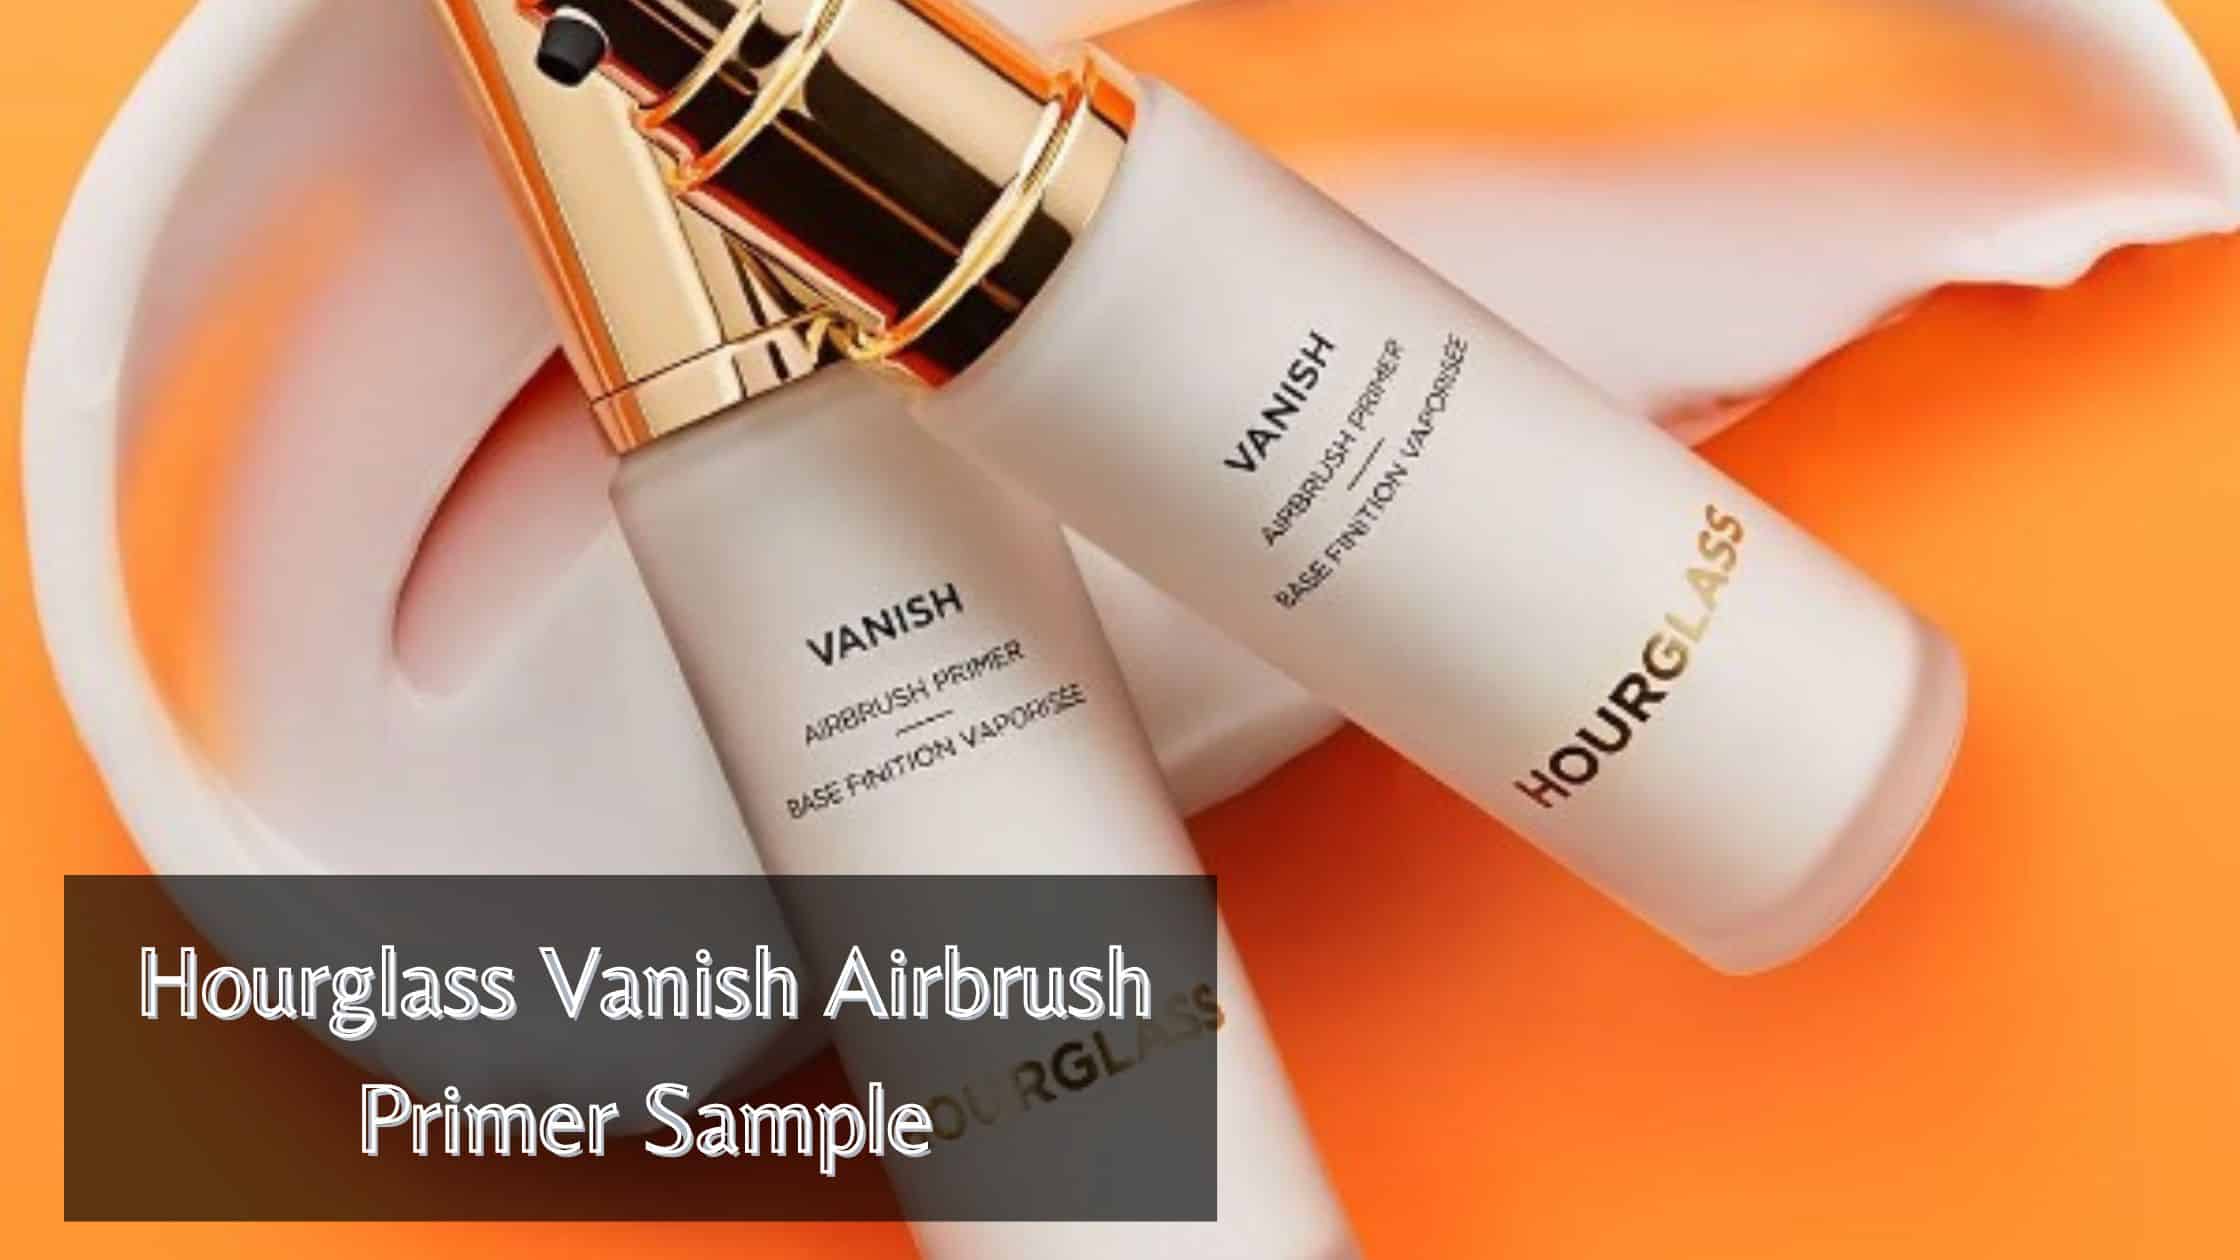 Hourglass Vanish Airbrush Primer Sample